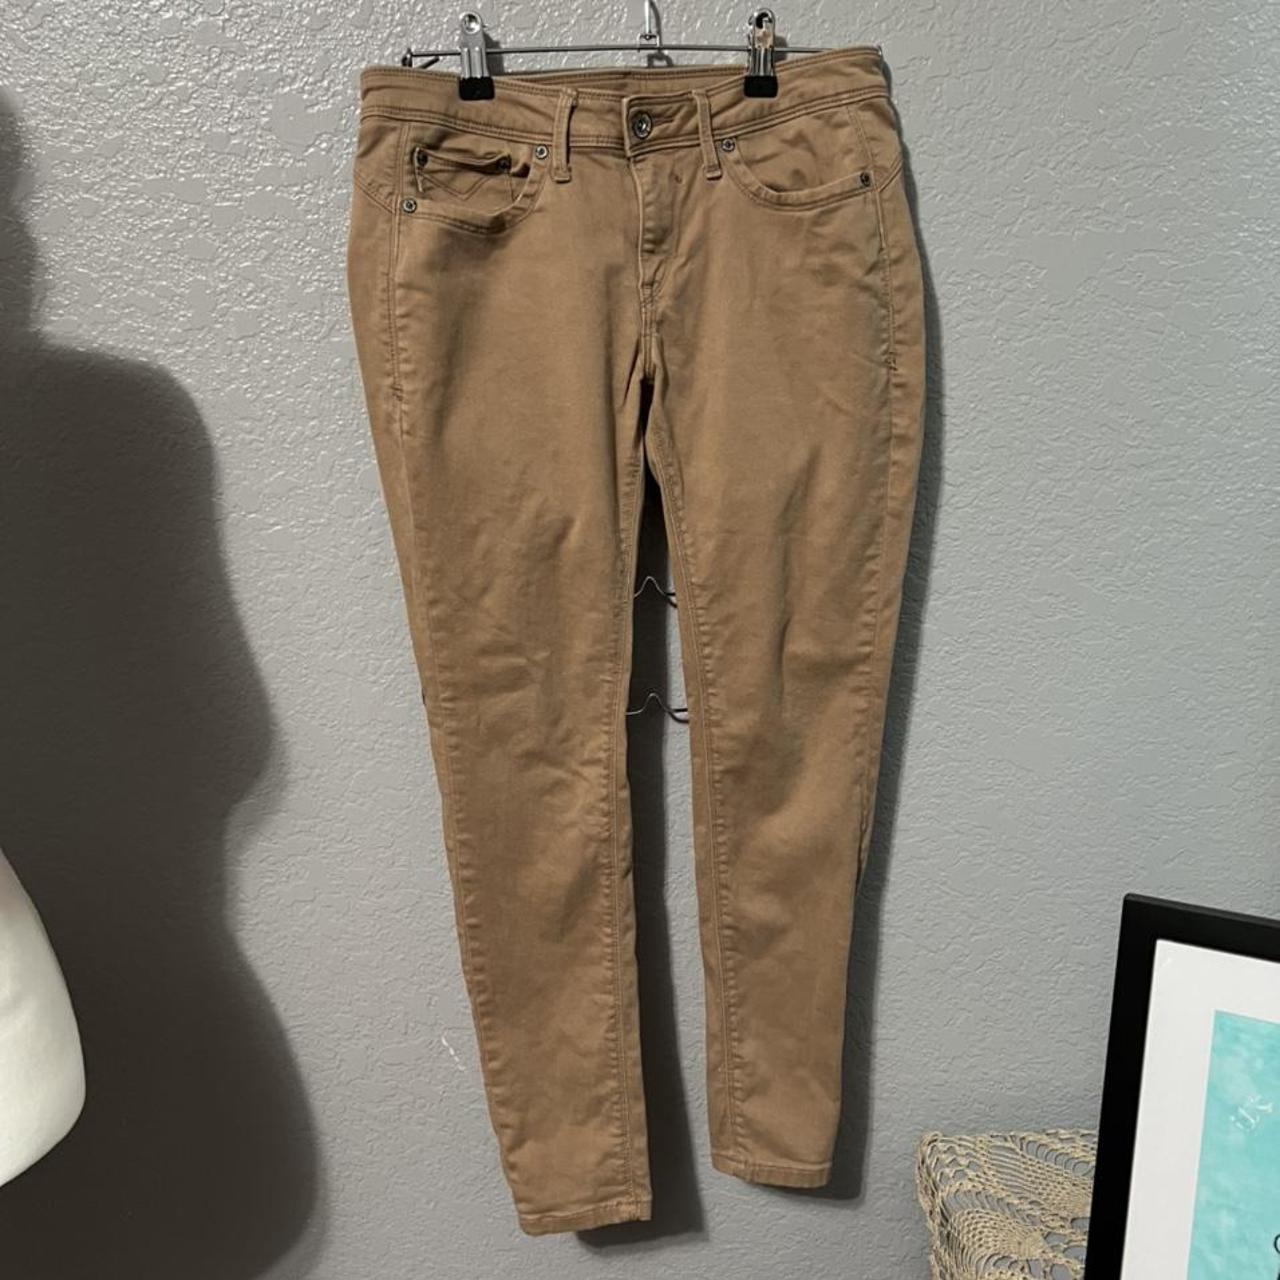 Product Image 1 - JagThug khaki pants, great condition.